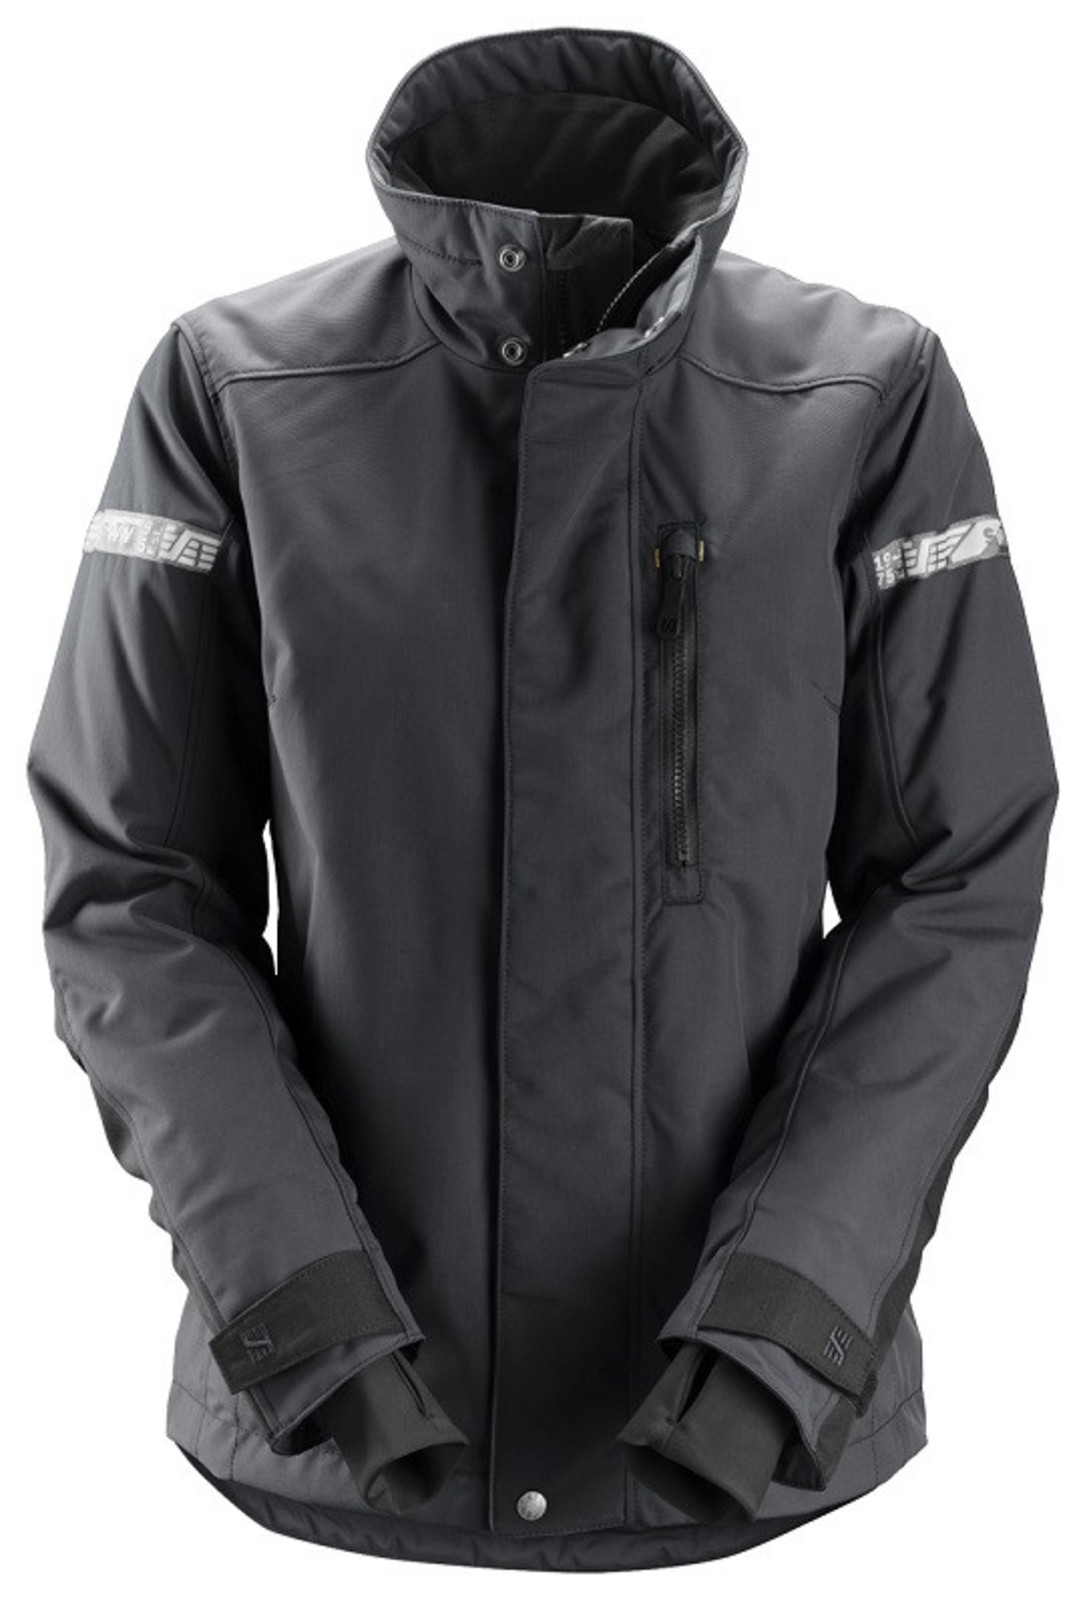 Dámska zimná bunda Snickers® AllroundWork 37.5® - veľkosť: XS, farba: oceľovo sivá